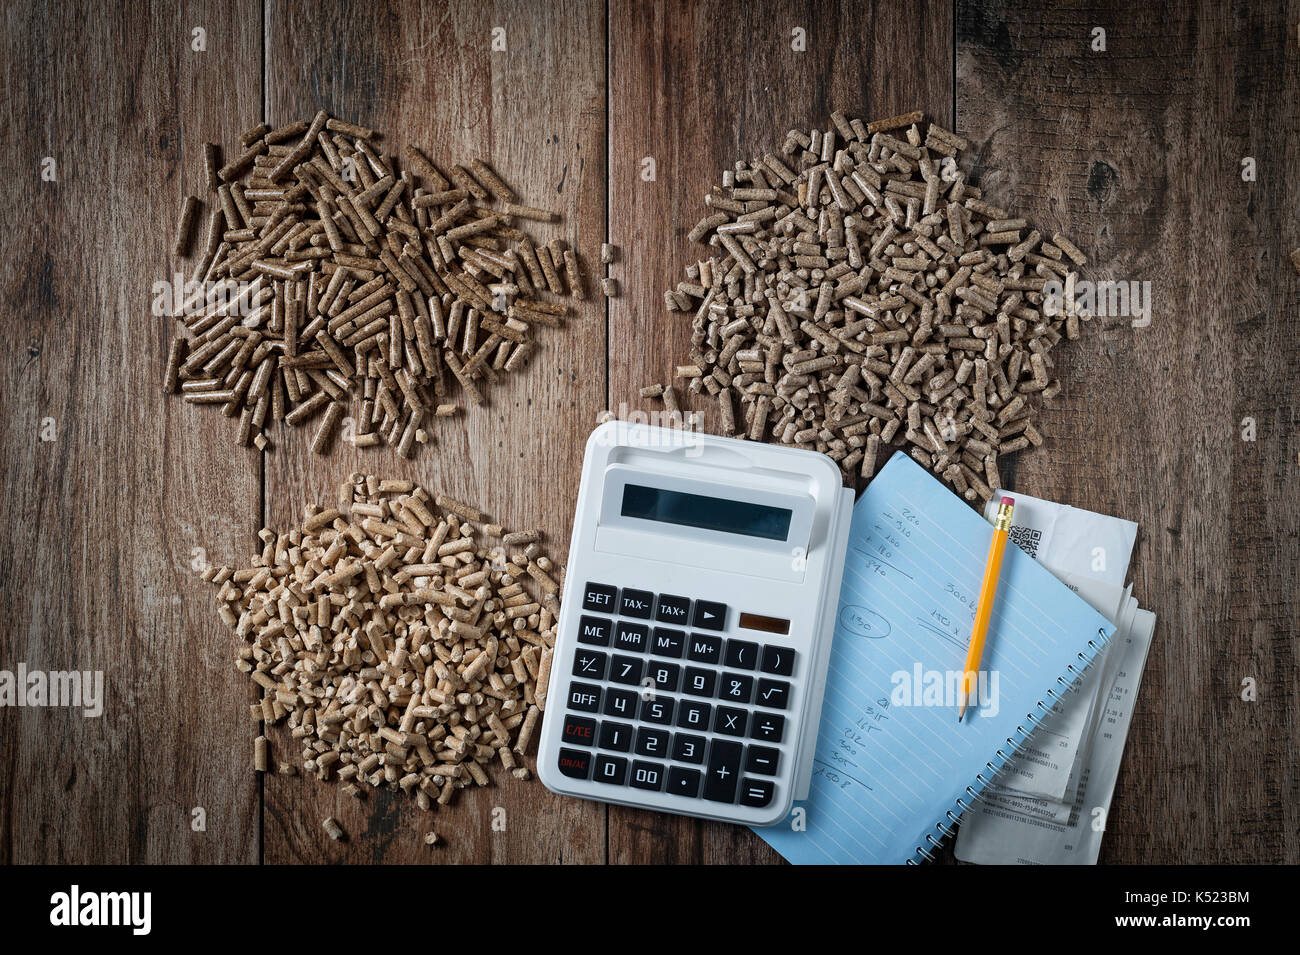 Die Berechnung der Haushalt Heizung Kosten auf verschiedene Art der  Pellets. Holz- pellets, biomasse, effiziente, umweltfreundliche und  wirtschaftliche Er Stockfotografie - Alamy